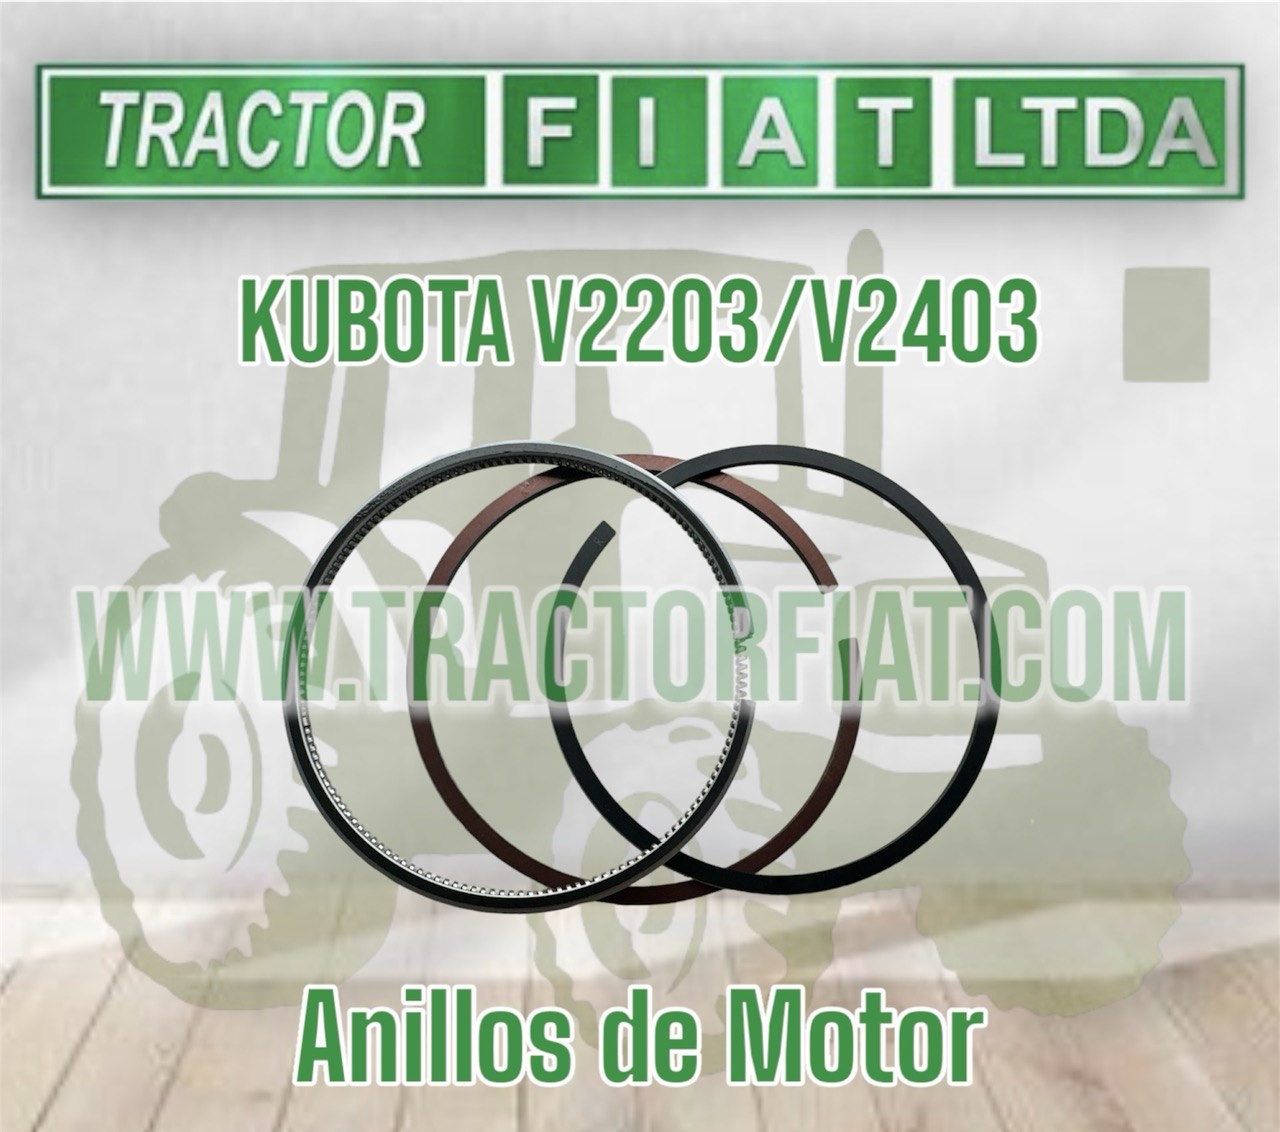 ANILLOS MOTOR KUBOTA V2403/V2203